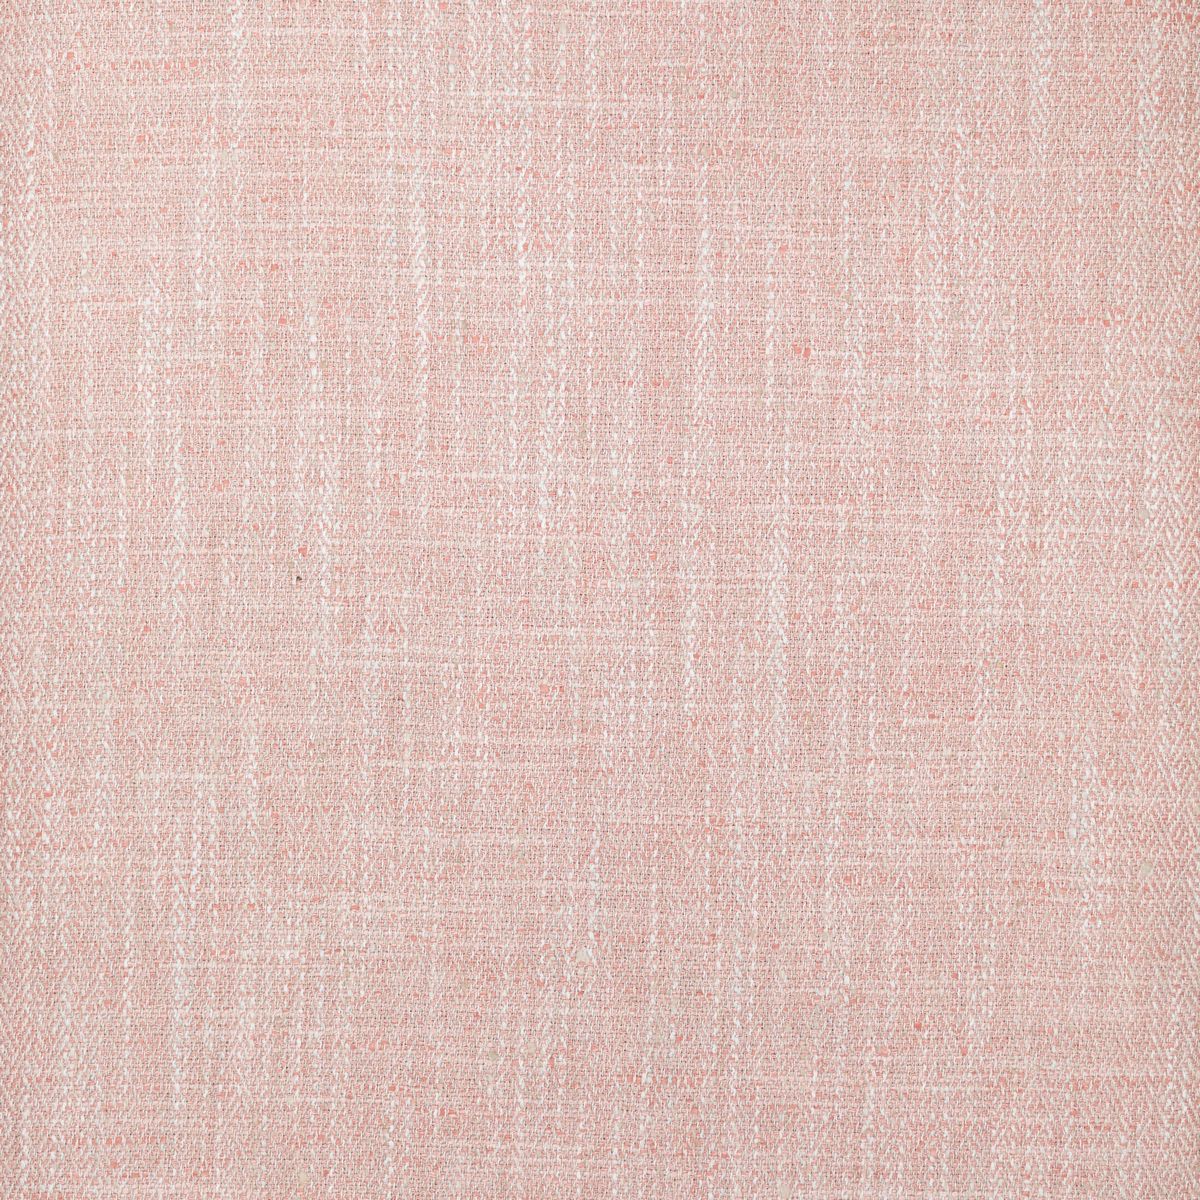 Jedburgh Blush Fabric by Voyage Maison